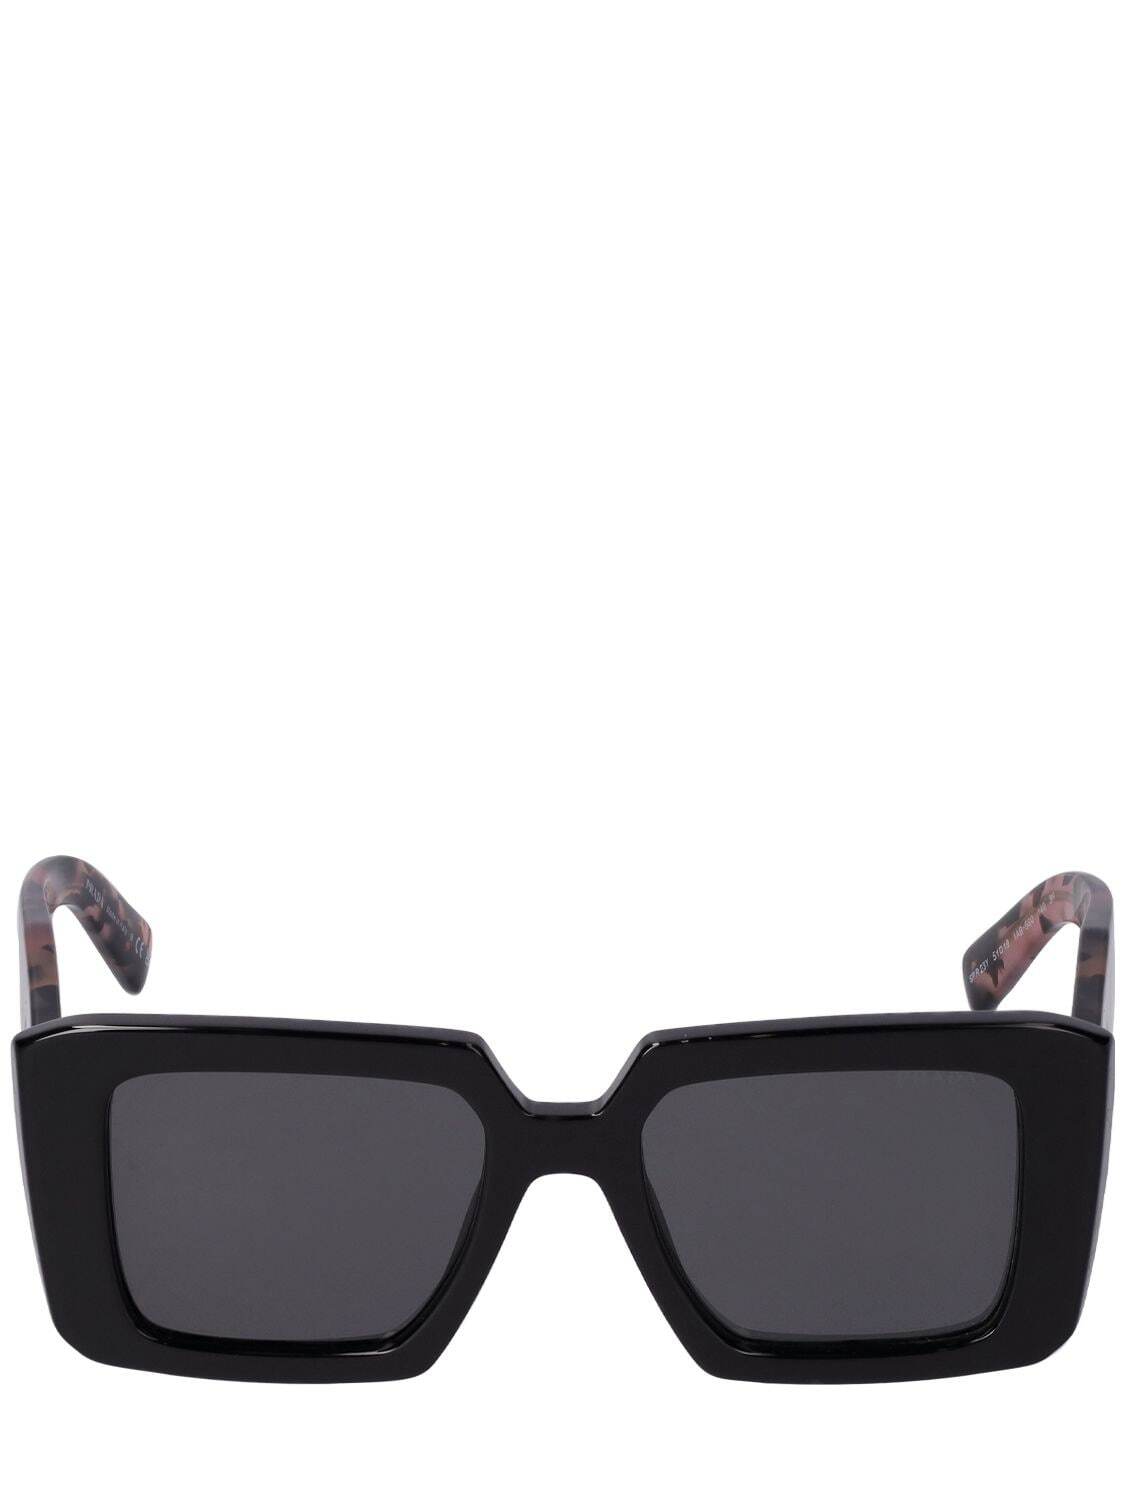 PRADA Symbole Evolution Squared Sunglasses in grey / multi